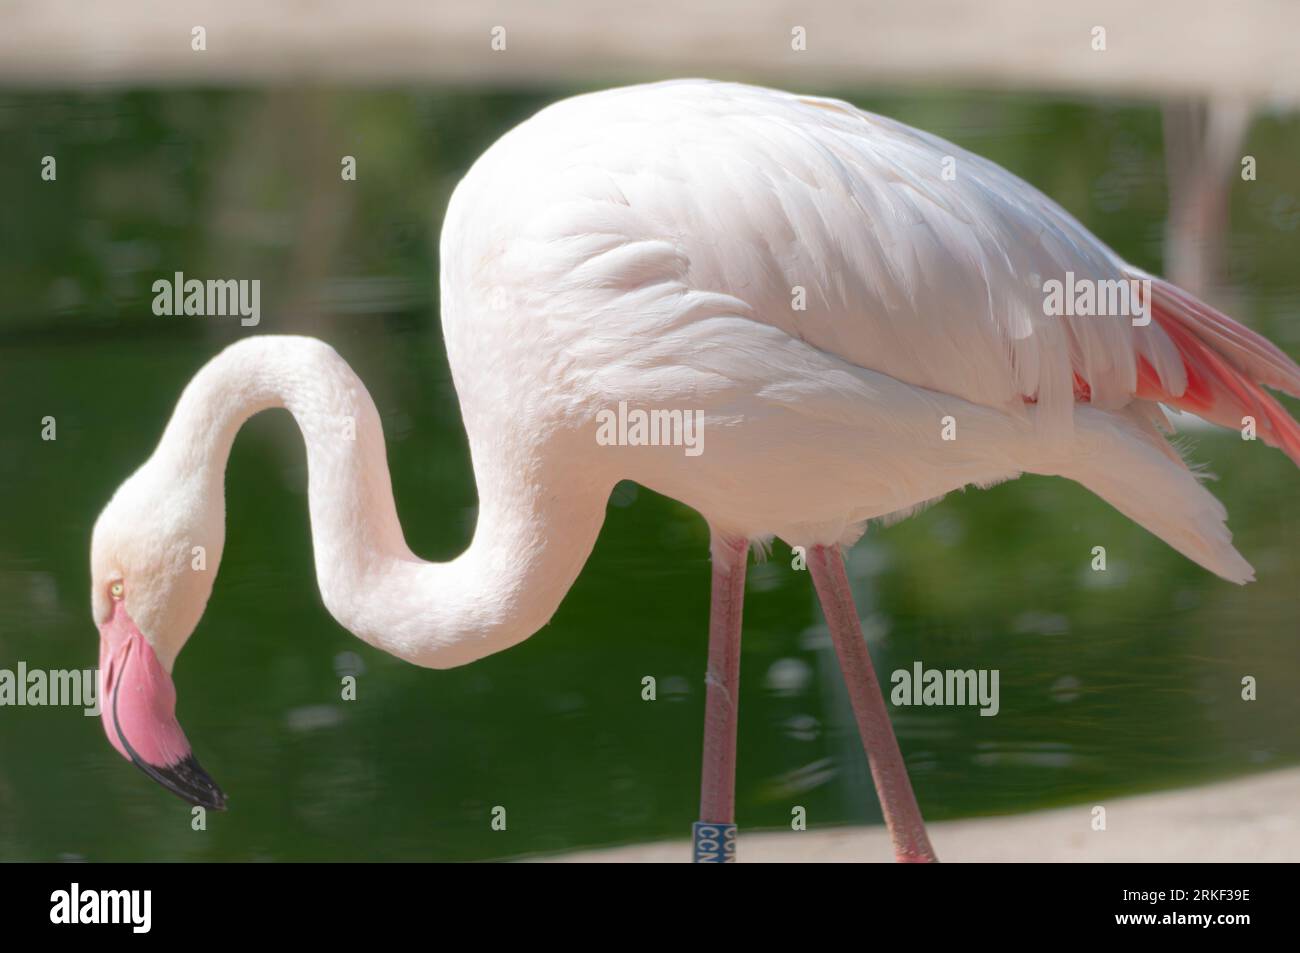 Seitenanschicht von einem Flamingo Foto Stock